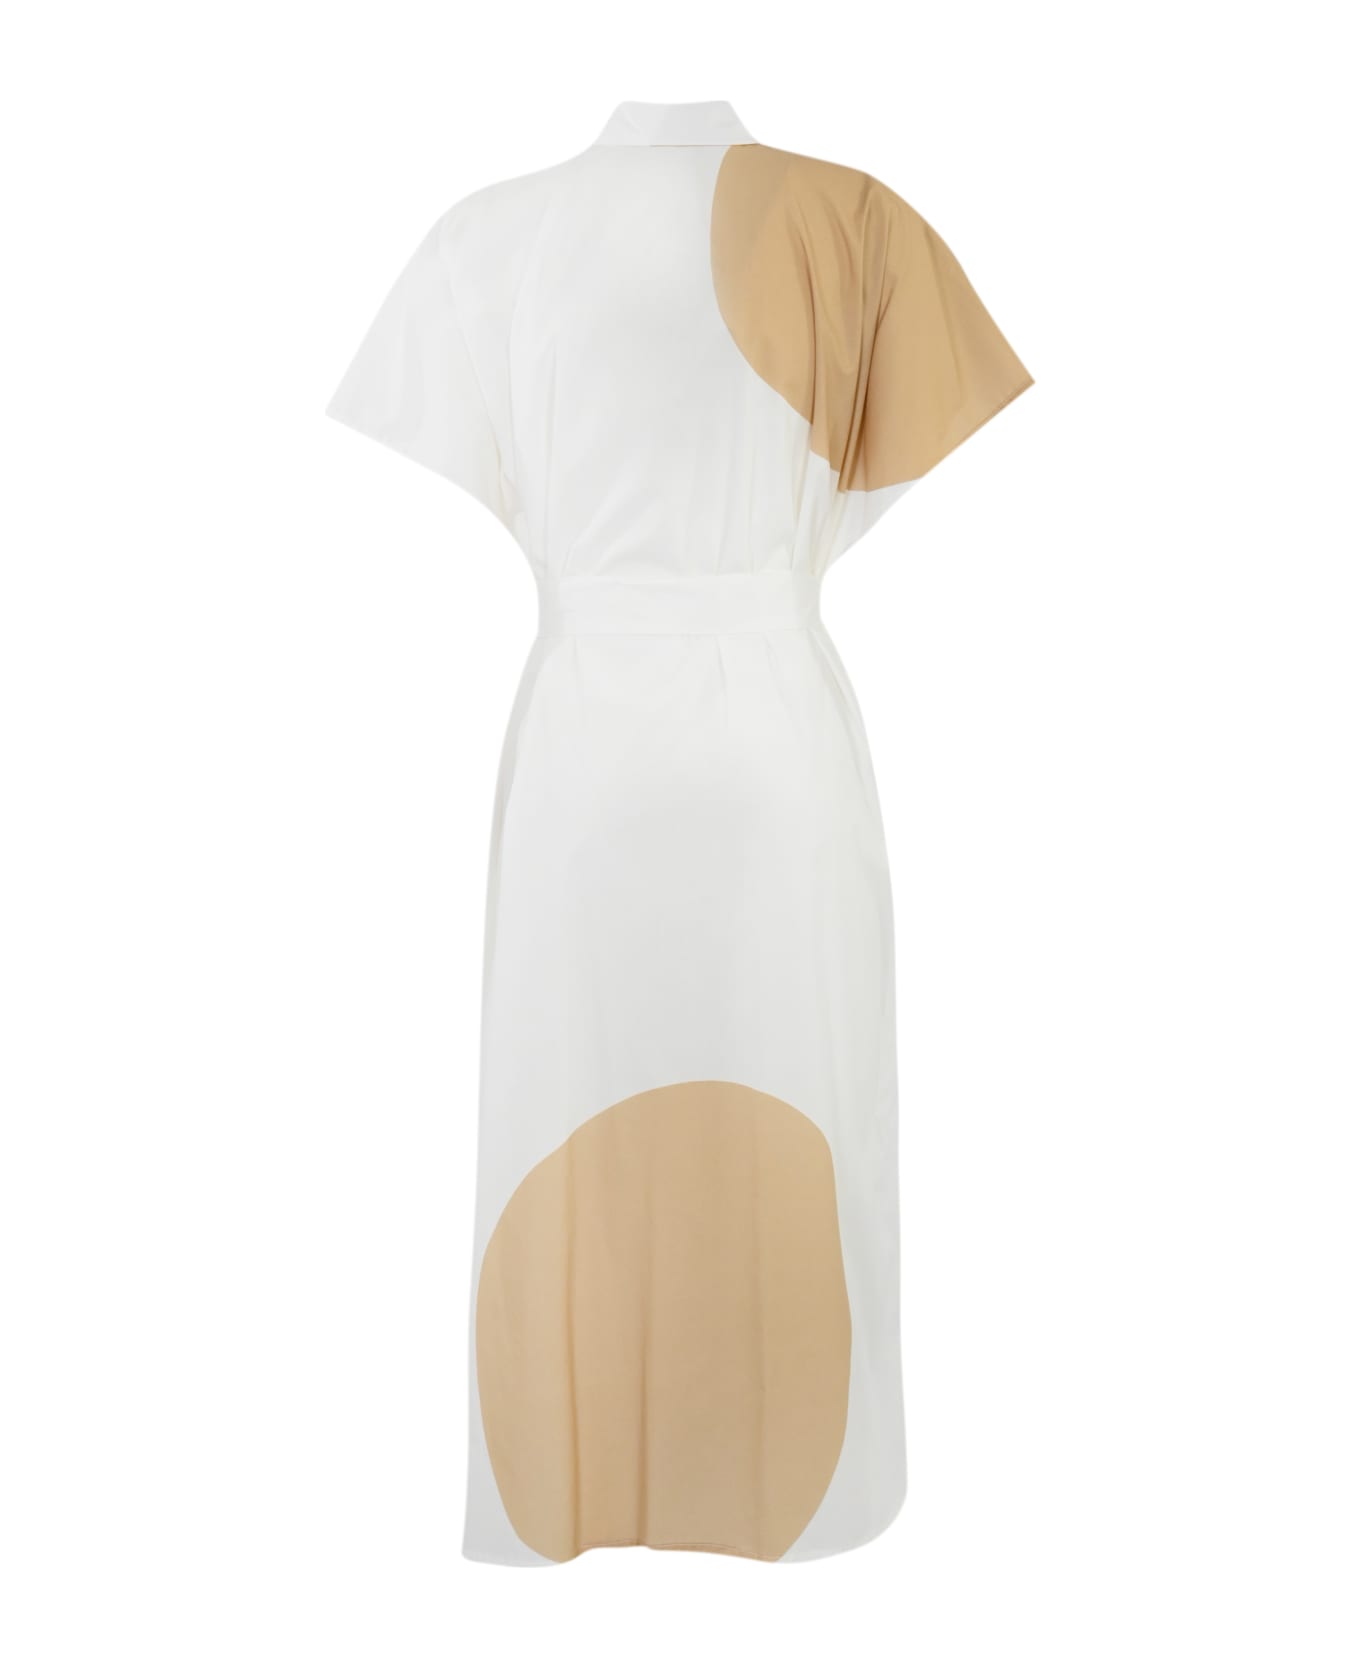 Liviana Conti Poplin Dress With Print - Pois bianco